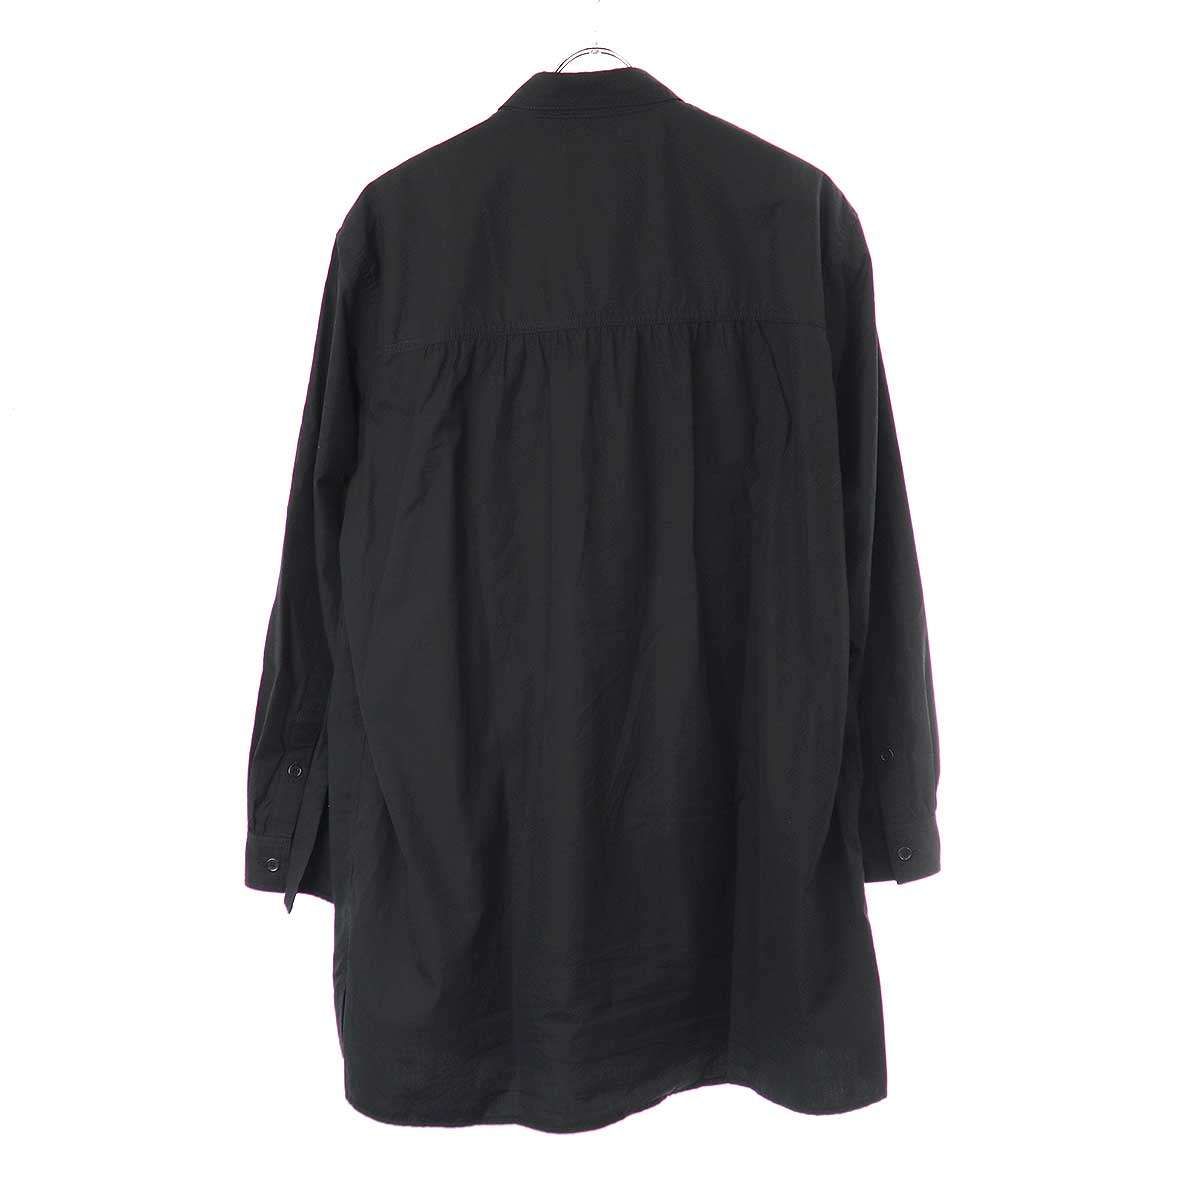 Yohji Yamamoto POUR HOMME ヨウジヤマモト プールオム 23AW ストール付き環縫いシャツ ブラック 2 HJ-B29-018  - メルカリ